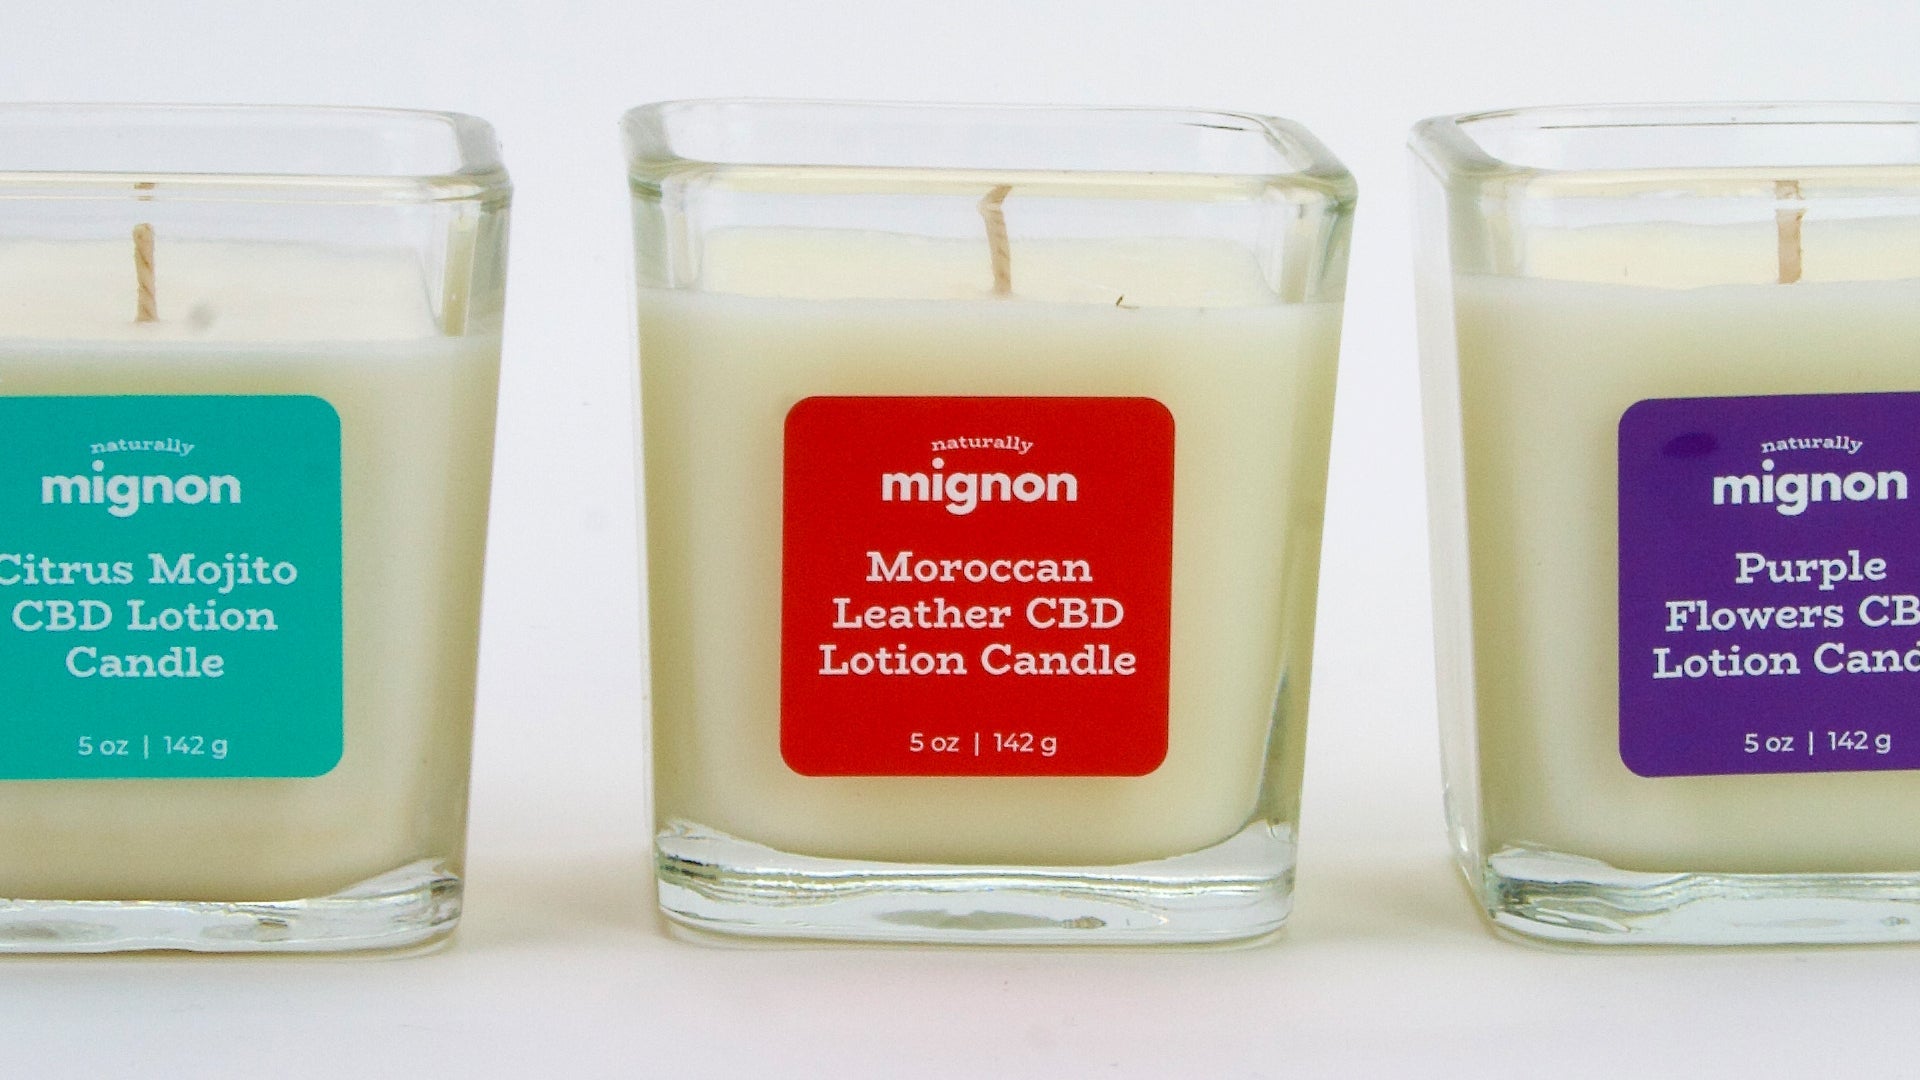 CBD Lotion Candles - Naturally Mignon CBD